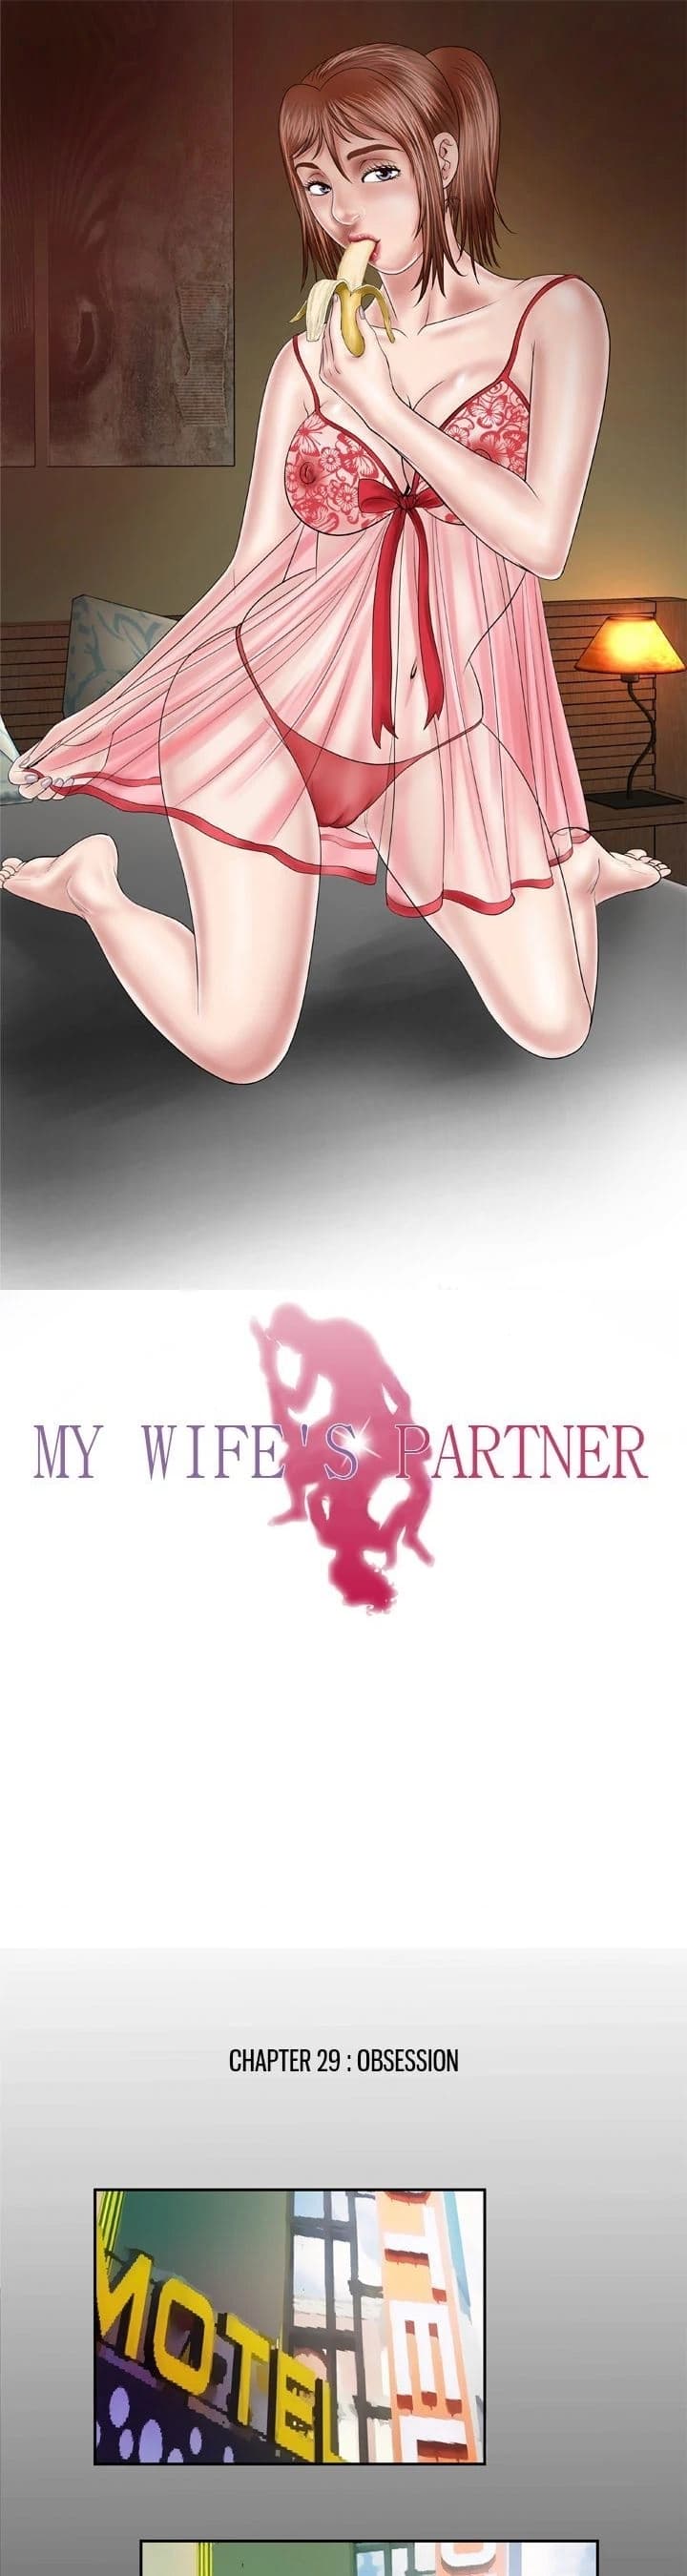 My Wife s Partner - หน้า 2